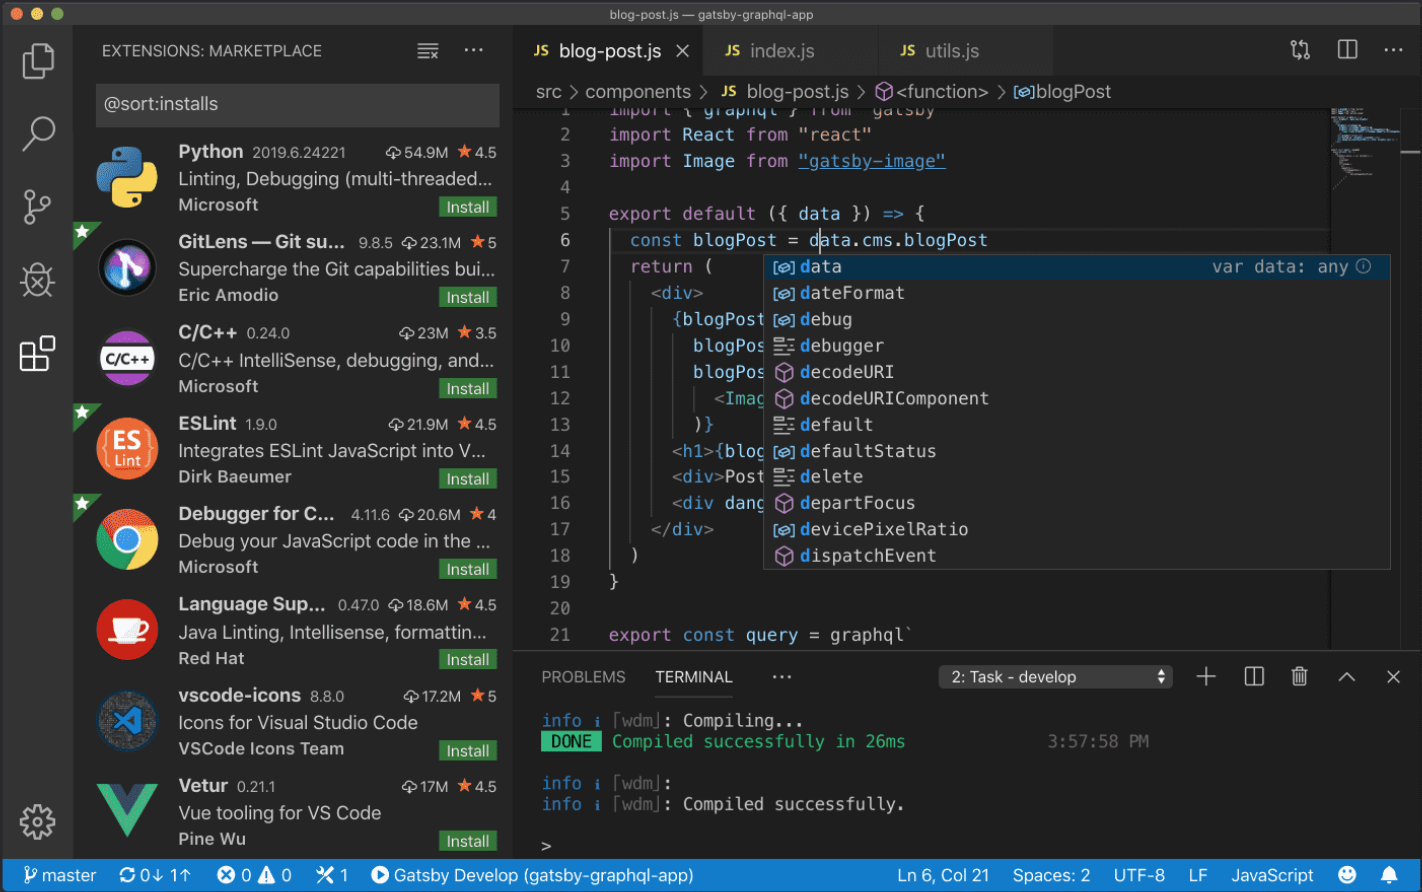 ویرایشگر Visual Studio Code